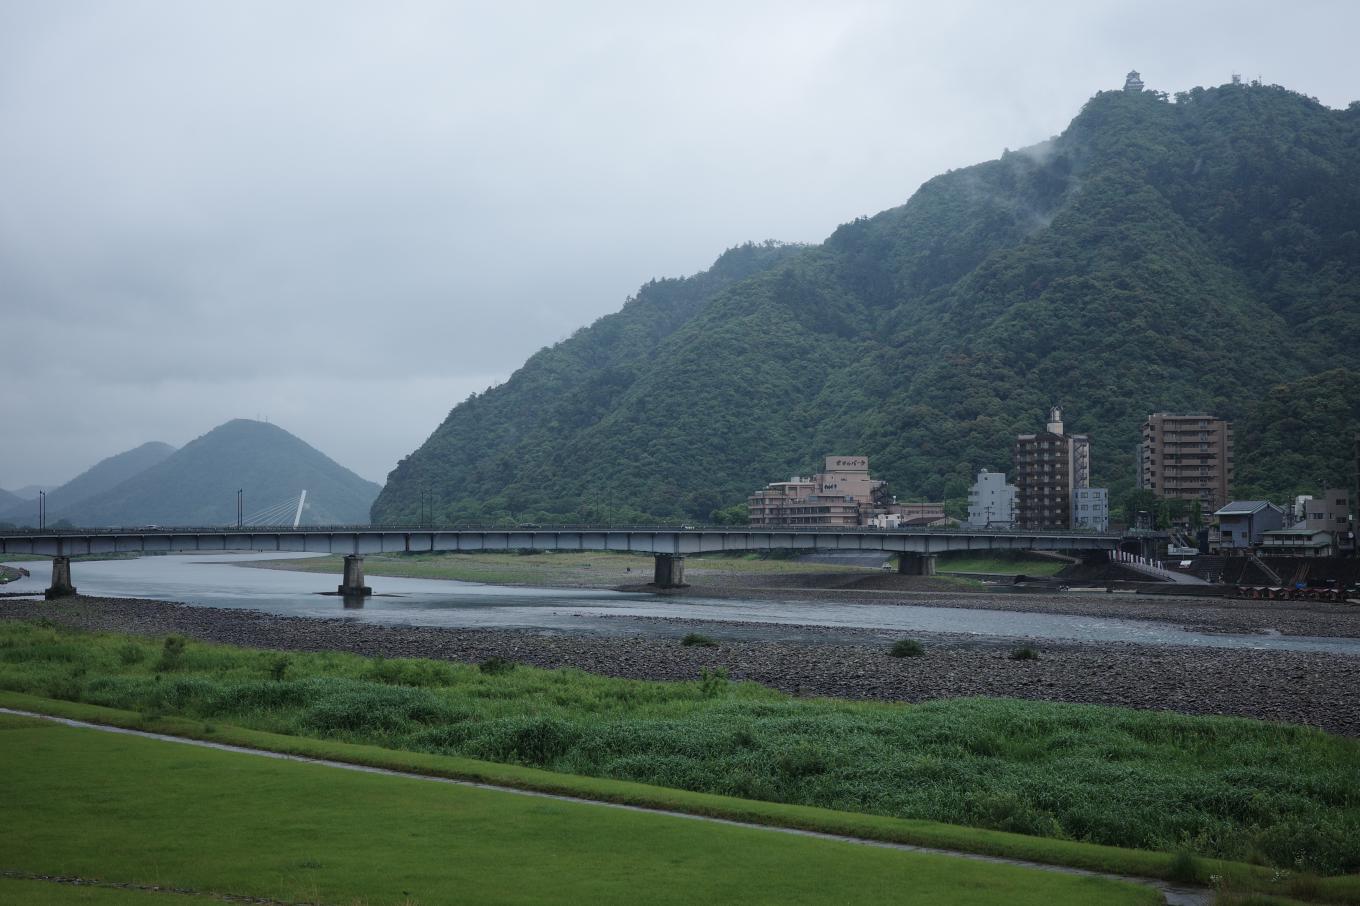 長良川と金華山。